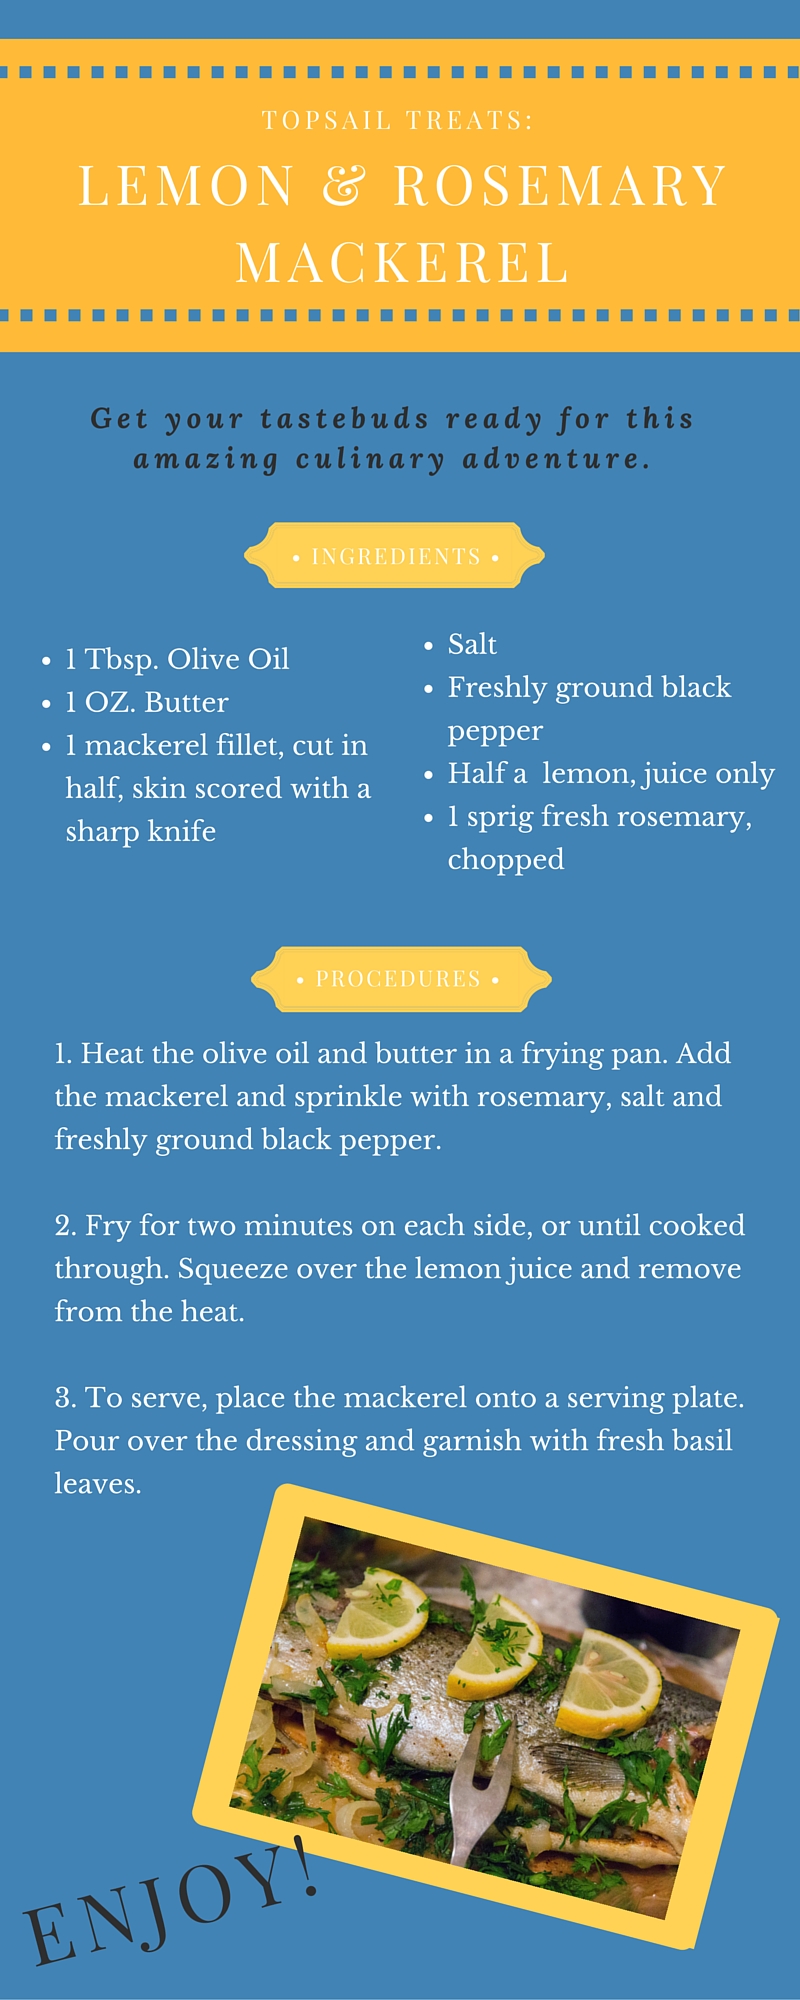 Lemon Rosemary Mackerel Recipe Card